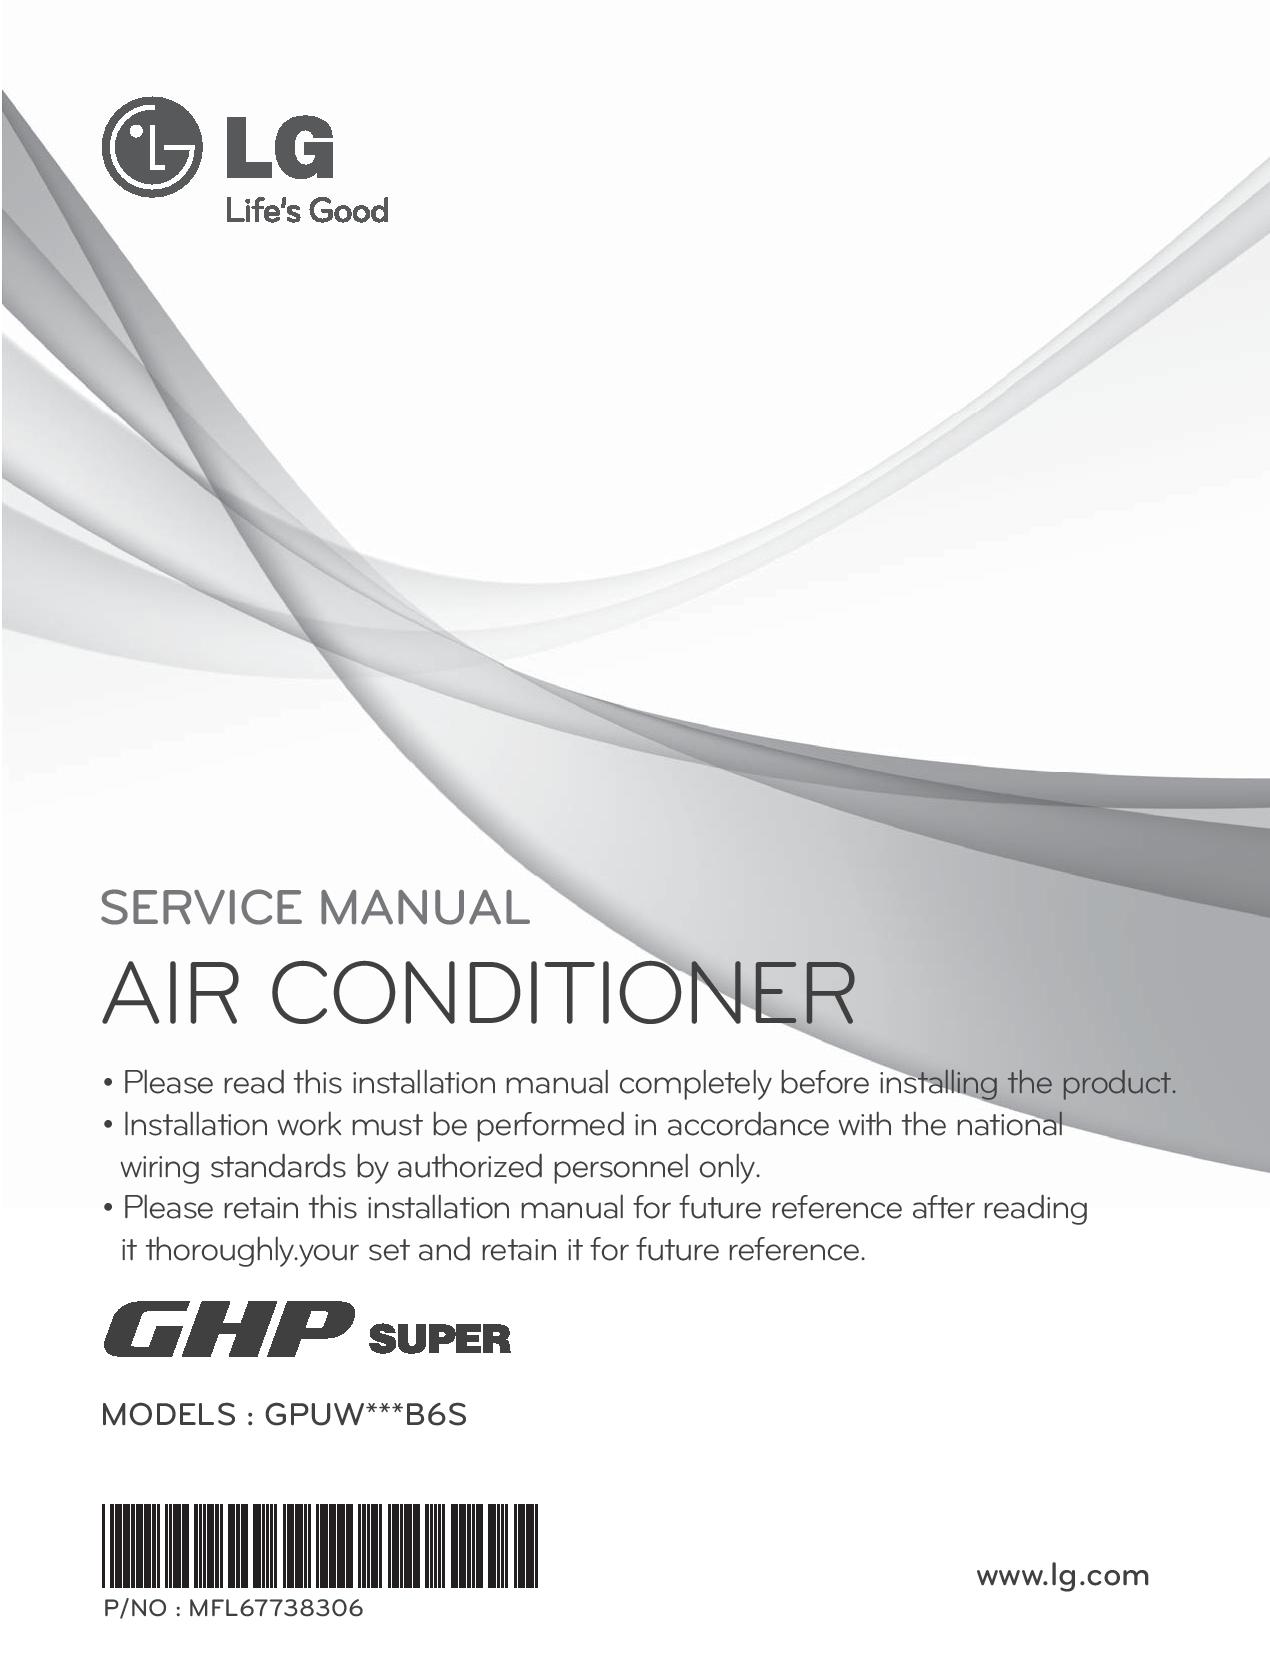 دفترچه راهنمای خدمات GHP